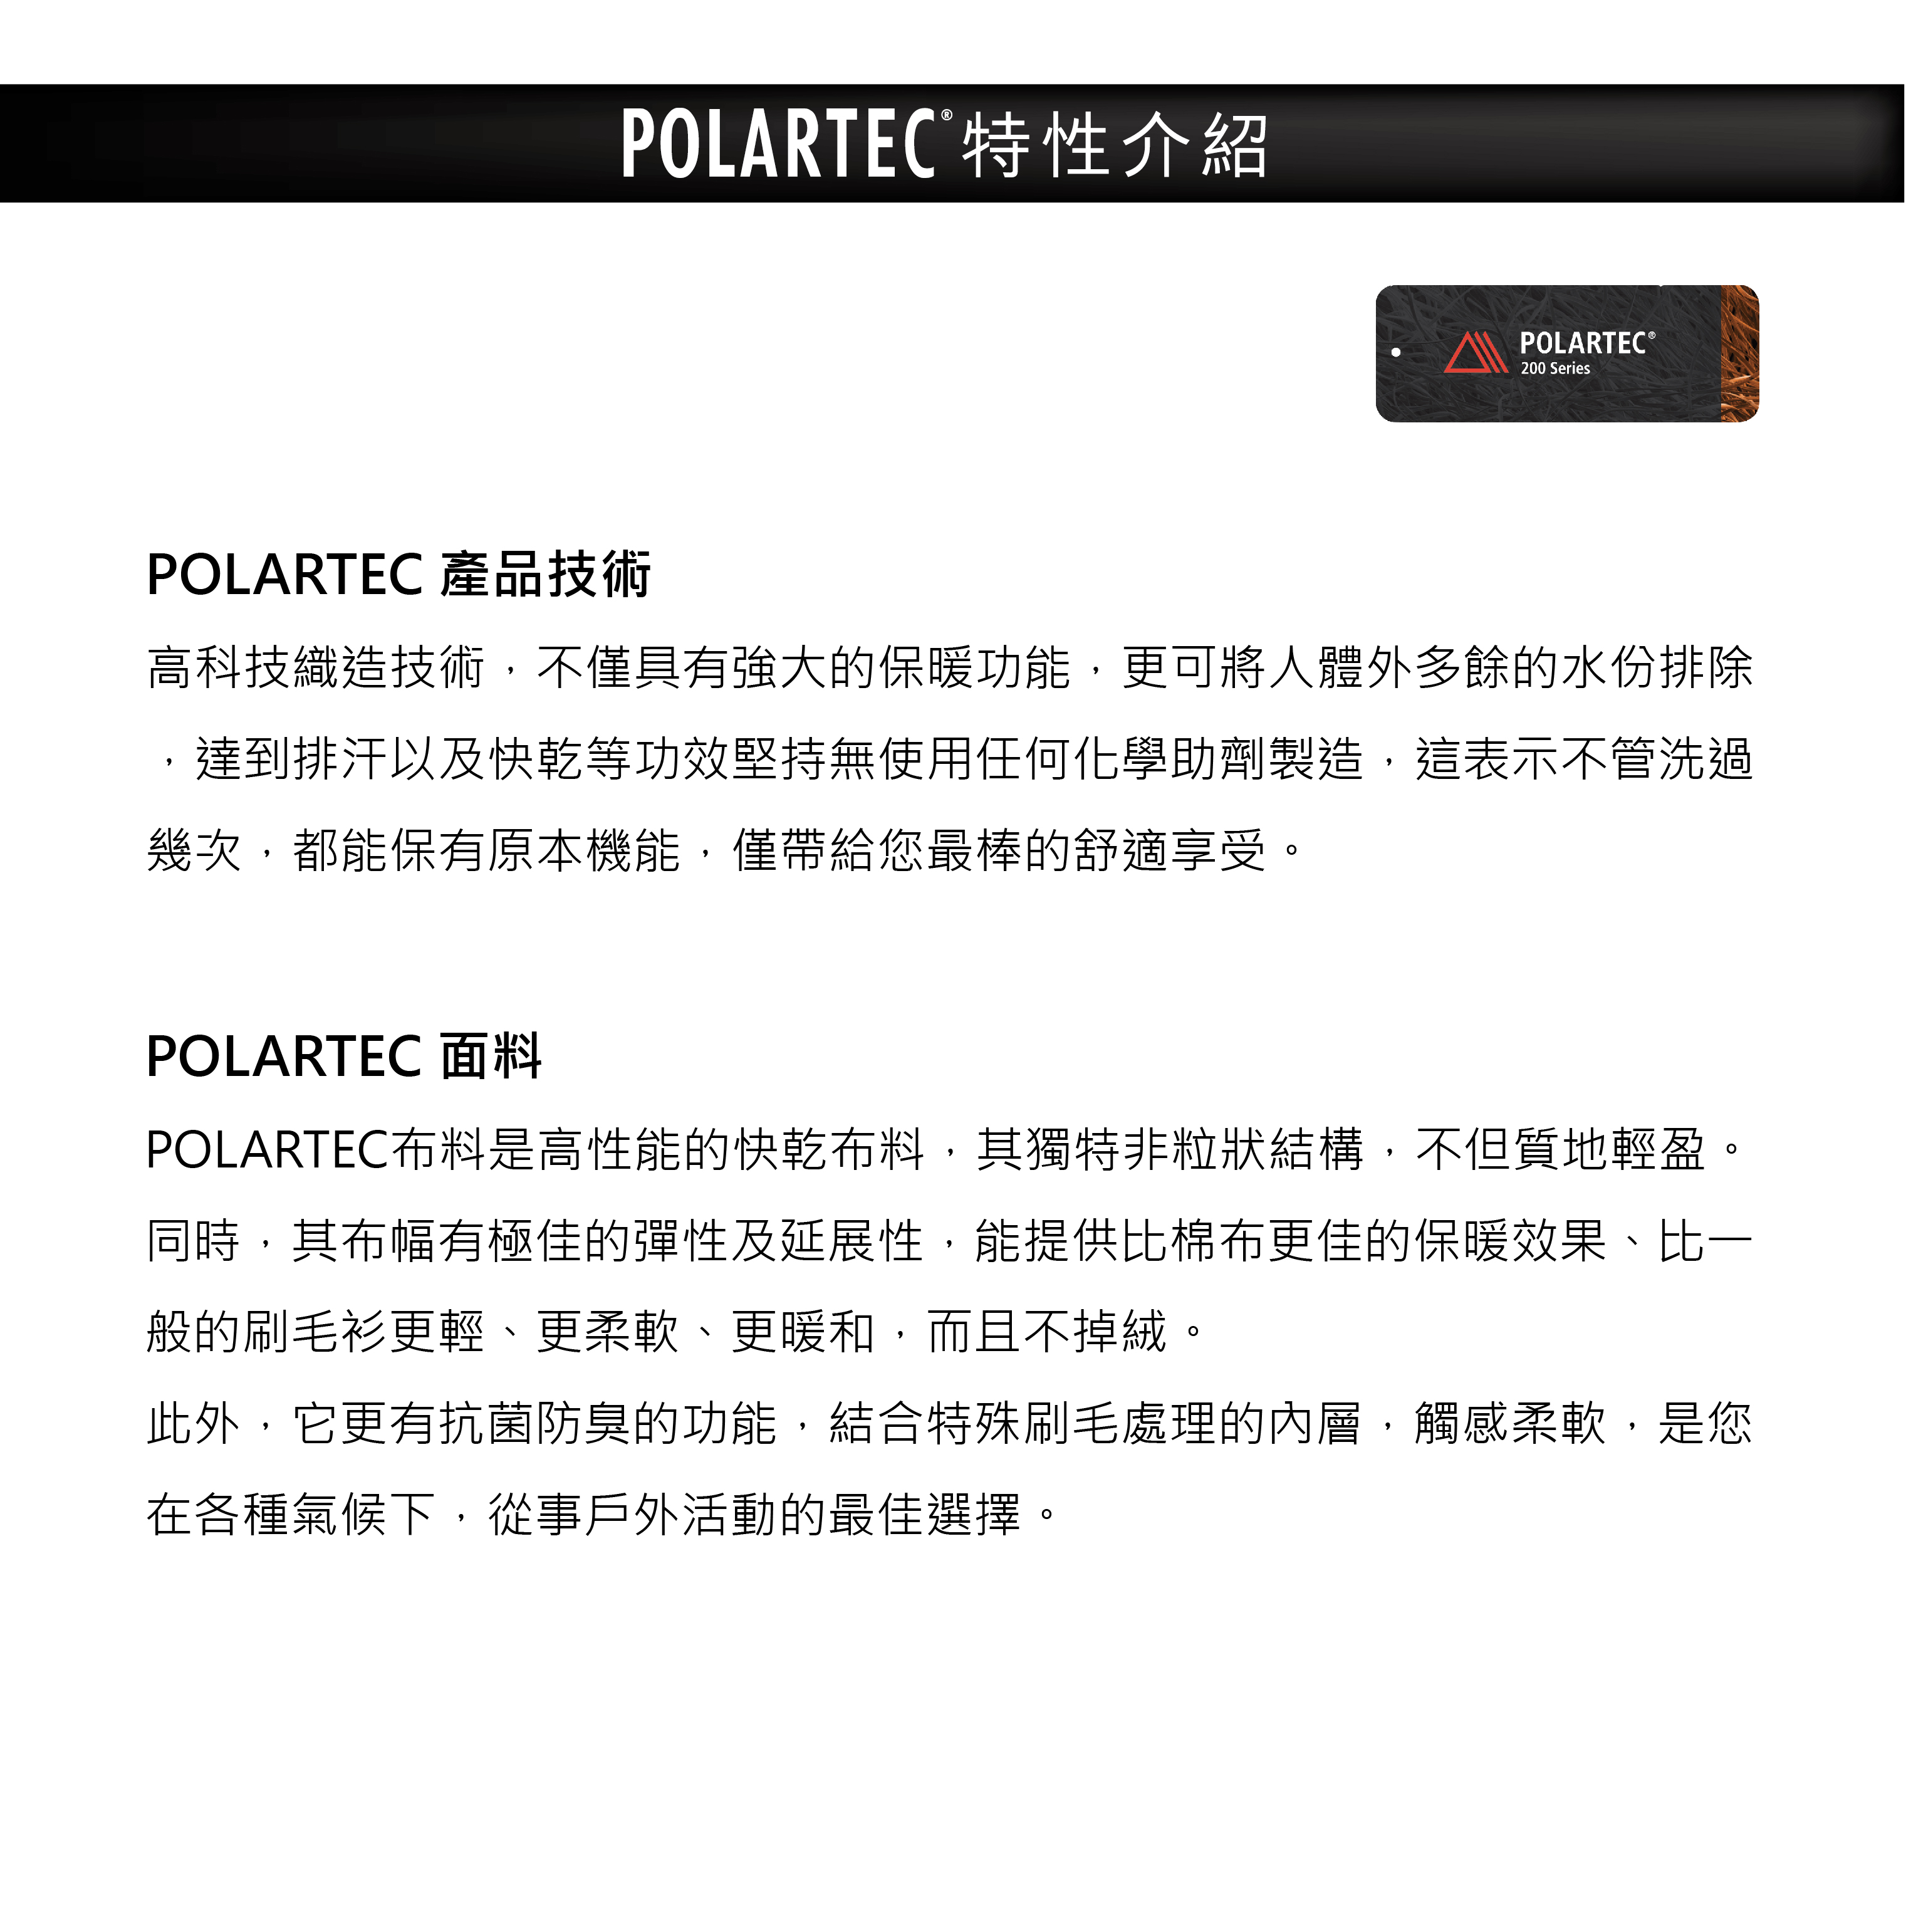 POLARTEC特性介紹POLARTEC 產品技術POLARTEC®200 Series高科技織造技術,不僅具有強大的保暖功能,更可將人體外多餘的水份排除,達到排汗以及快乾等功效堅持無使用任何化學助劑製造,這表示不管洗過幾次,都能保有原本機能,僅帶給您最棒的舒適享受。POLARTEC 面料POLARTEC布料是高性能的快乾布料,其獨特非粒狀結構,不但質地輕盈。同時,其布幅有極佳的彈性及延展性,能提供比棉布更佳的保暖效果、比一般的刷毛衫更輕、更柔軟、更暖和,而且不掉絨。此外,它更有抗菌防臭的功能,結合特殊刷毛處理的內層,觸感柔軟,是您在各種氣候下,從事戶外活動的最佳選擇。